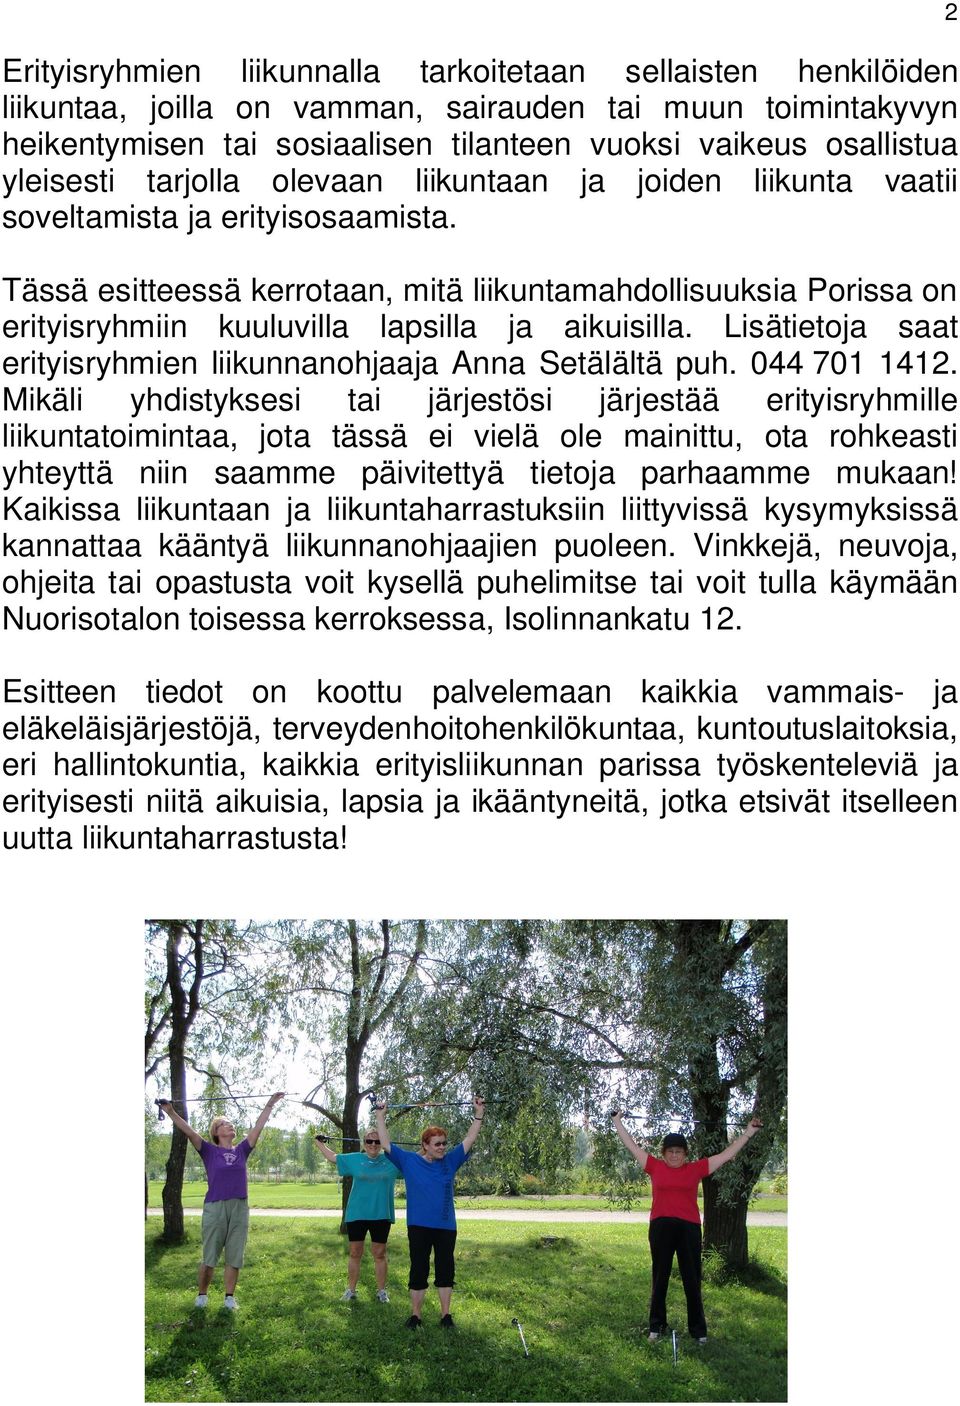 Tässä esitteessä kerrotaan, mitä liikuntamahdollisuuksia Porissa on erityisryhmiin kuuluvilla lapsilla ja aikuisilla. Lisätietoja saat erityisryhmien liikunnanohjaaja Anna Setälältä puh. 044 701 1412.